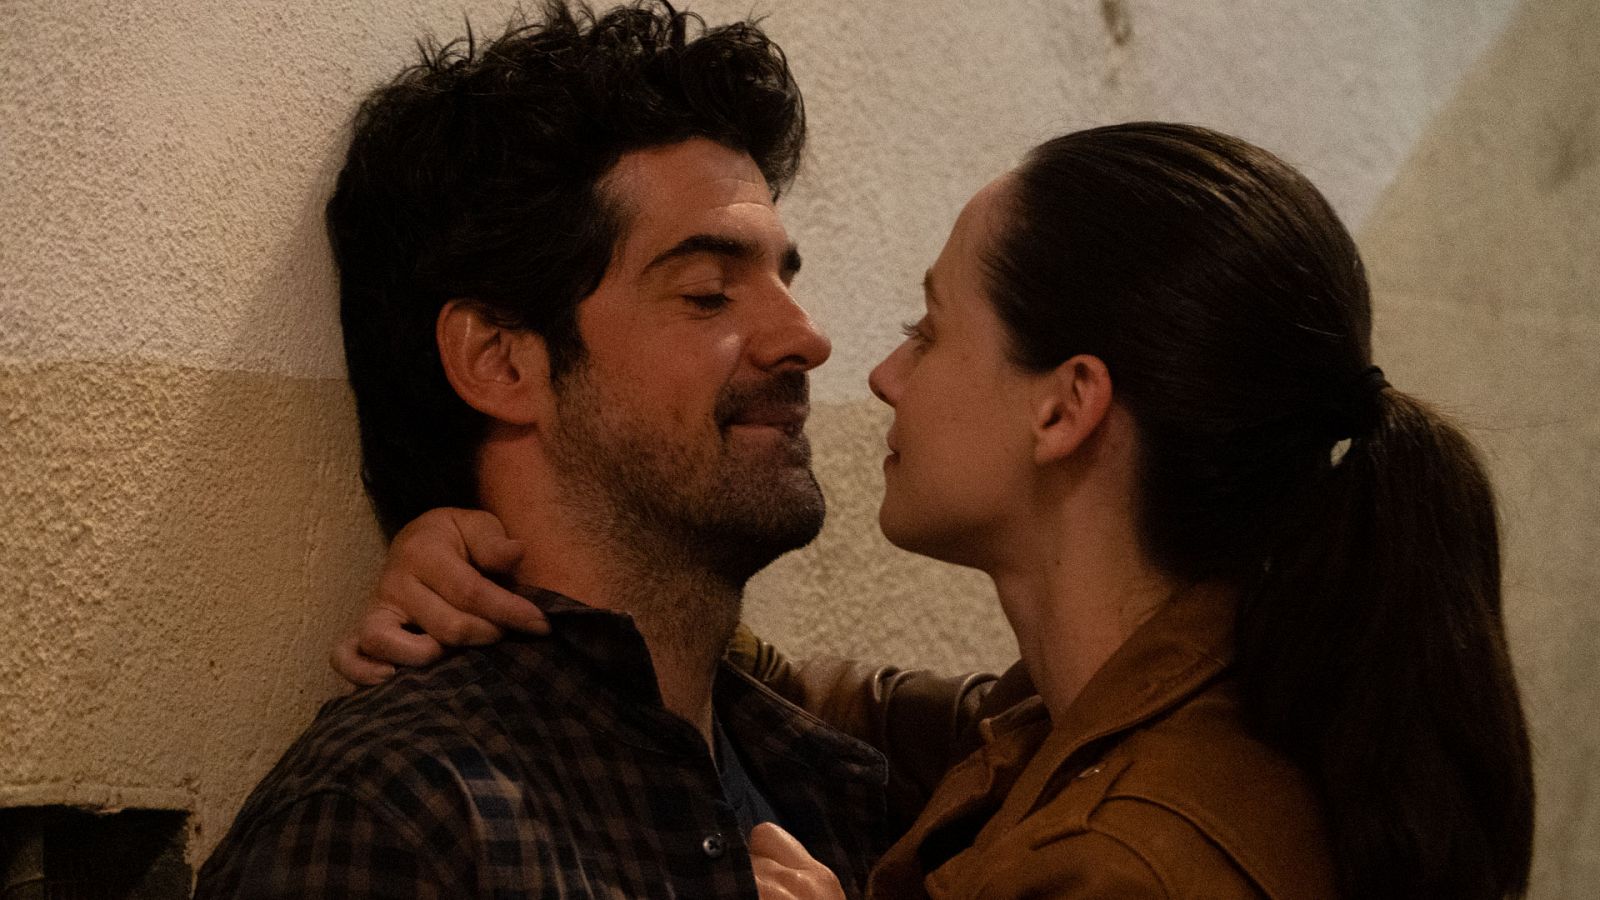 Sequía - ¿Cómo se entendieron los actores portugueses y españoles al rodar la serie?